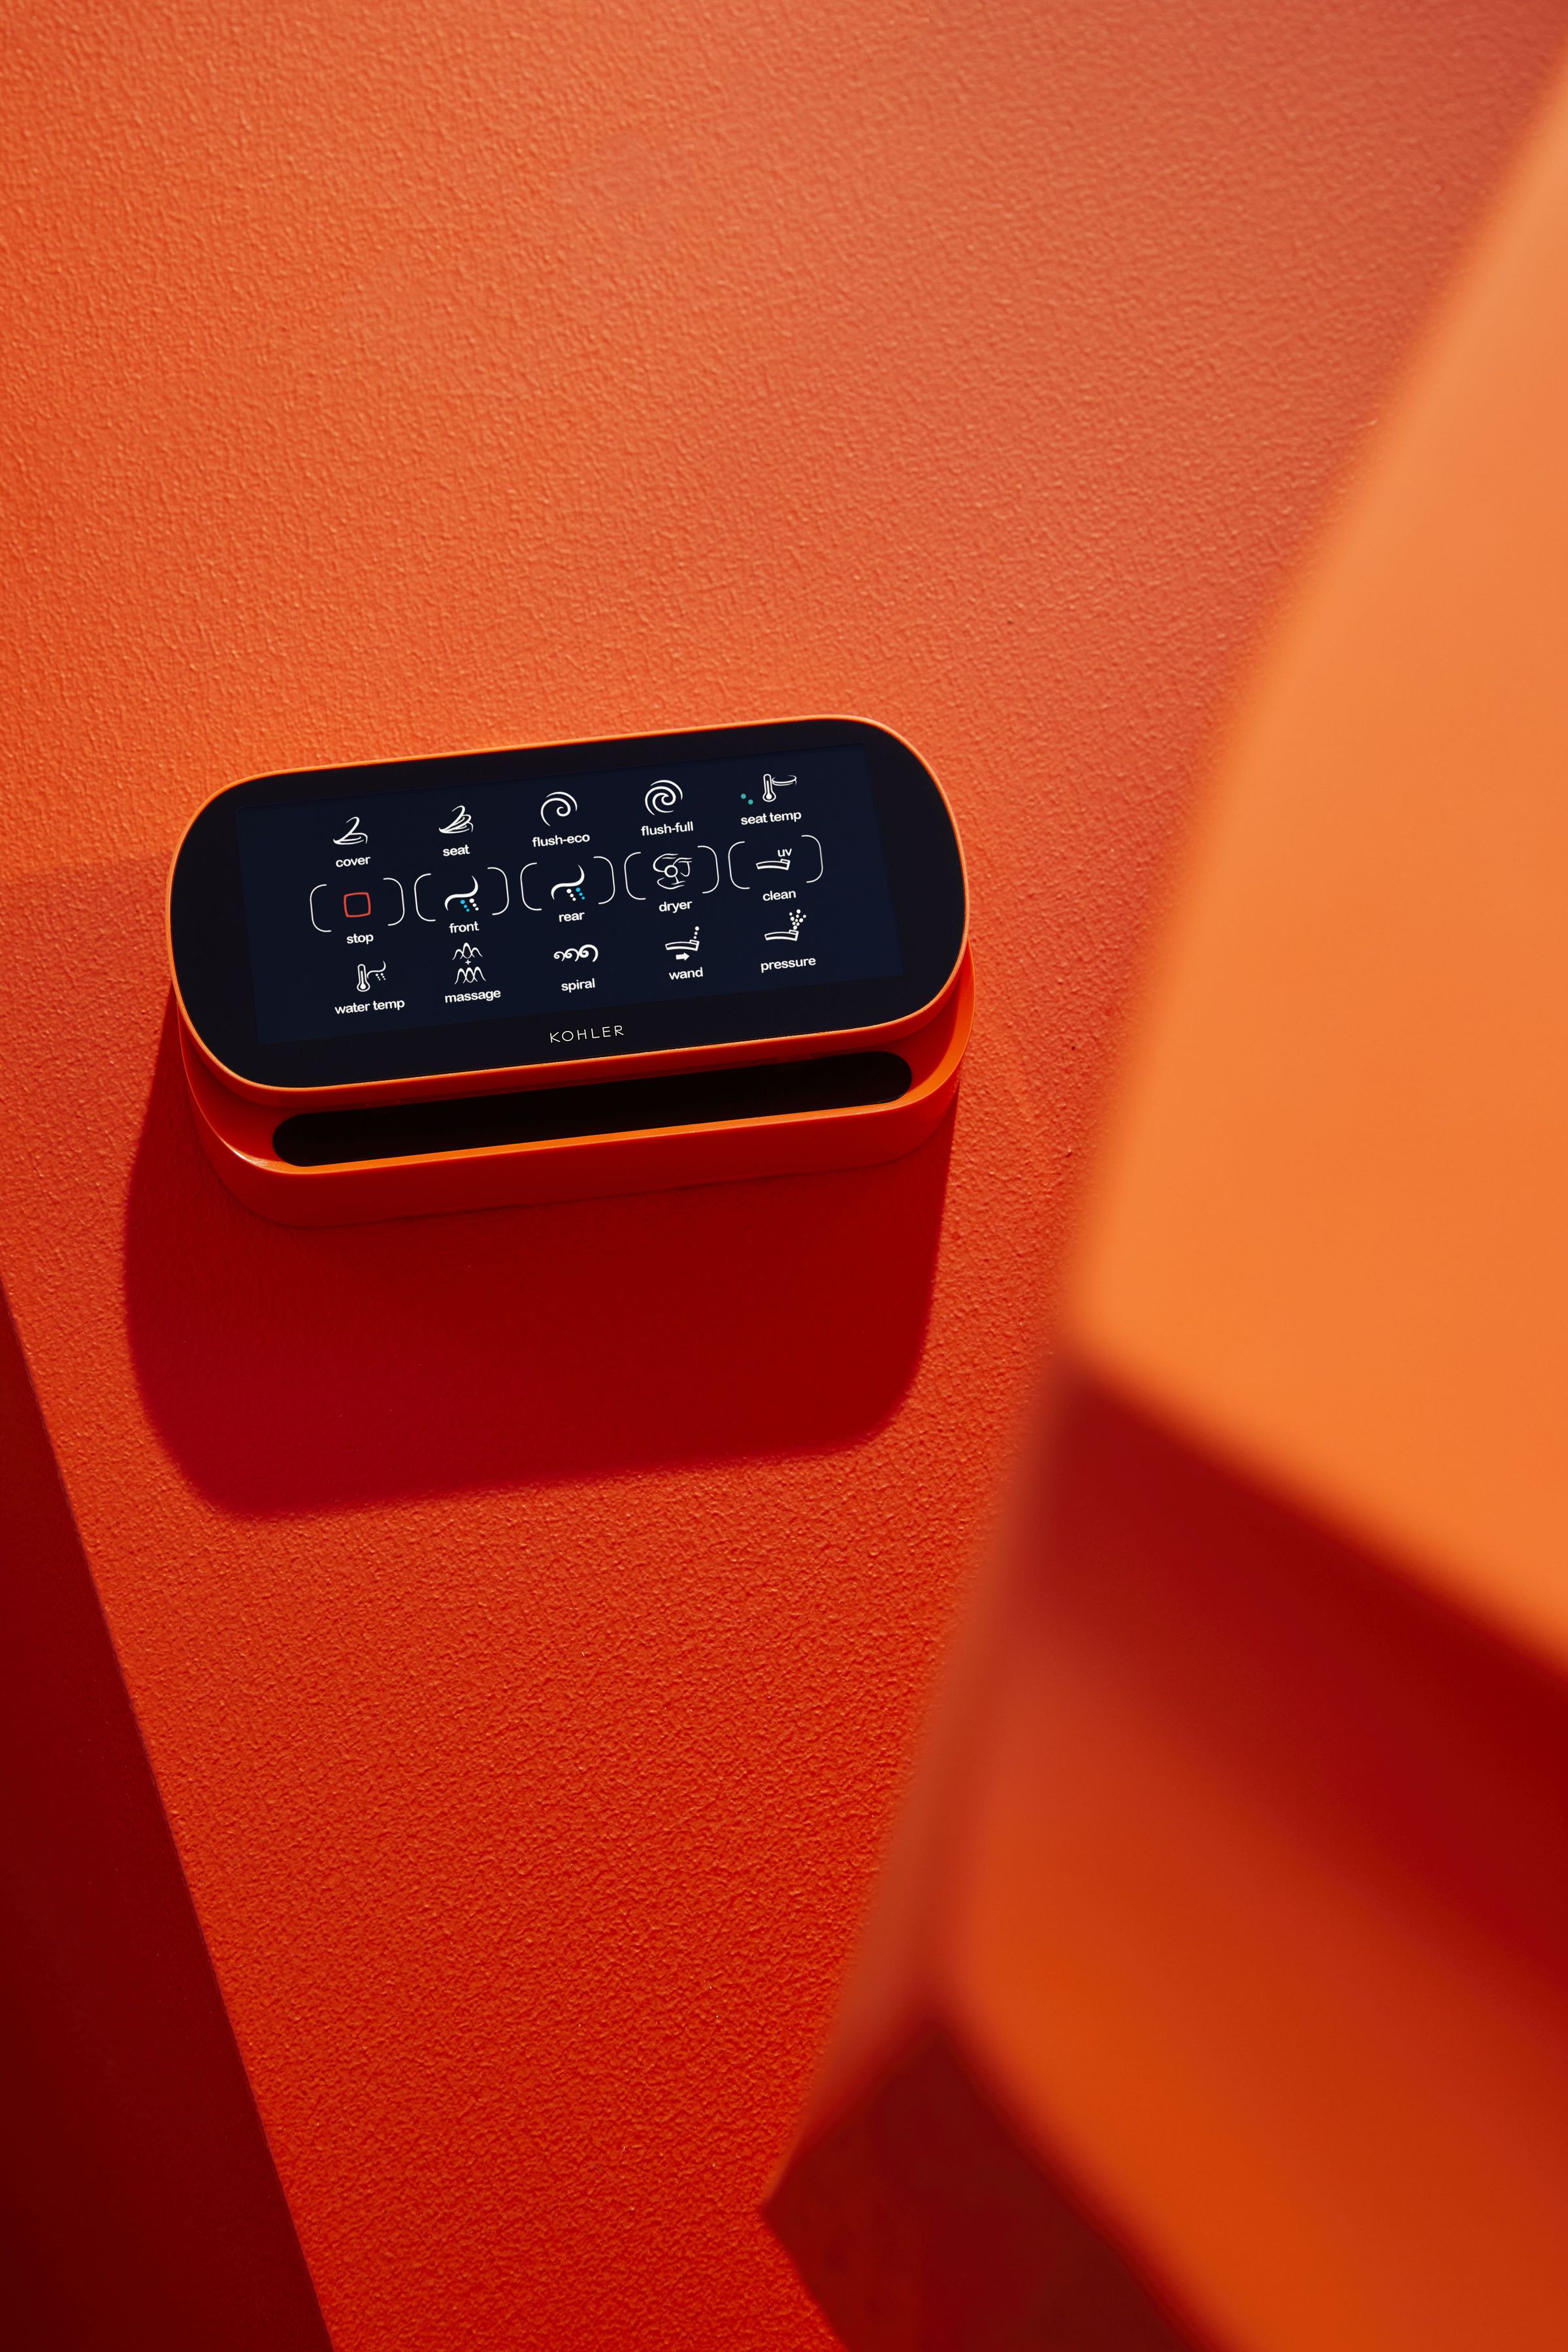 <em>There’s also a remote control, in orange.</em>